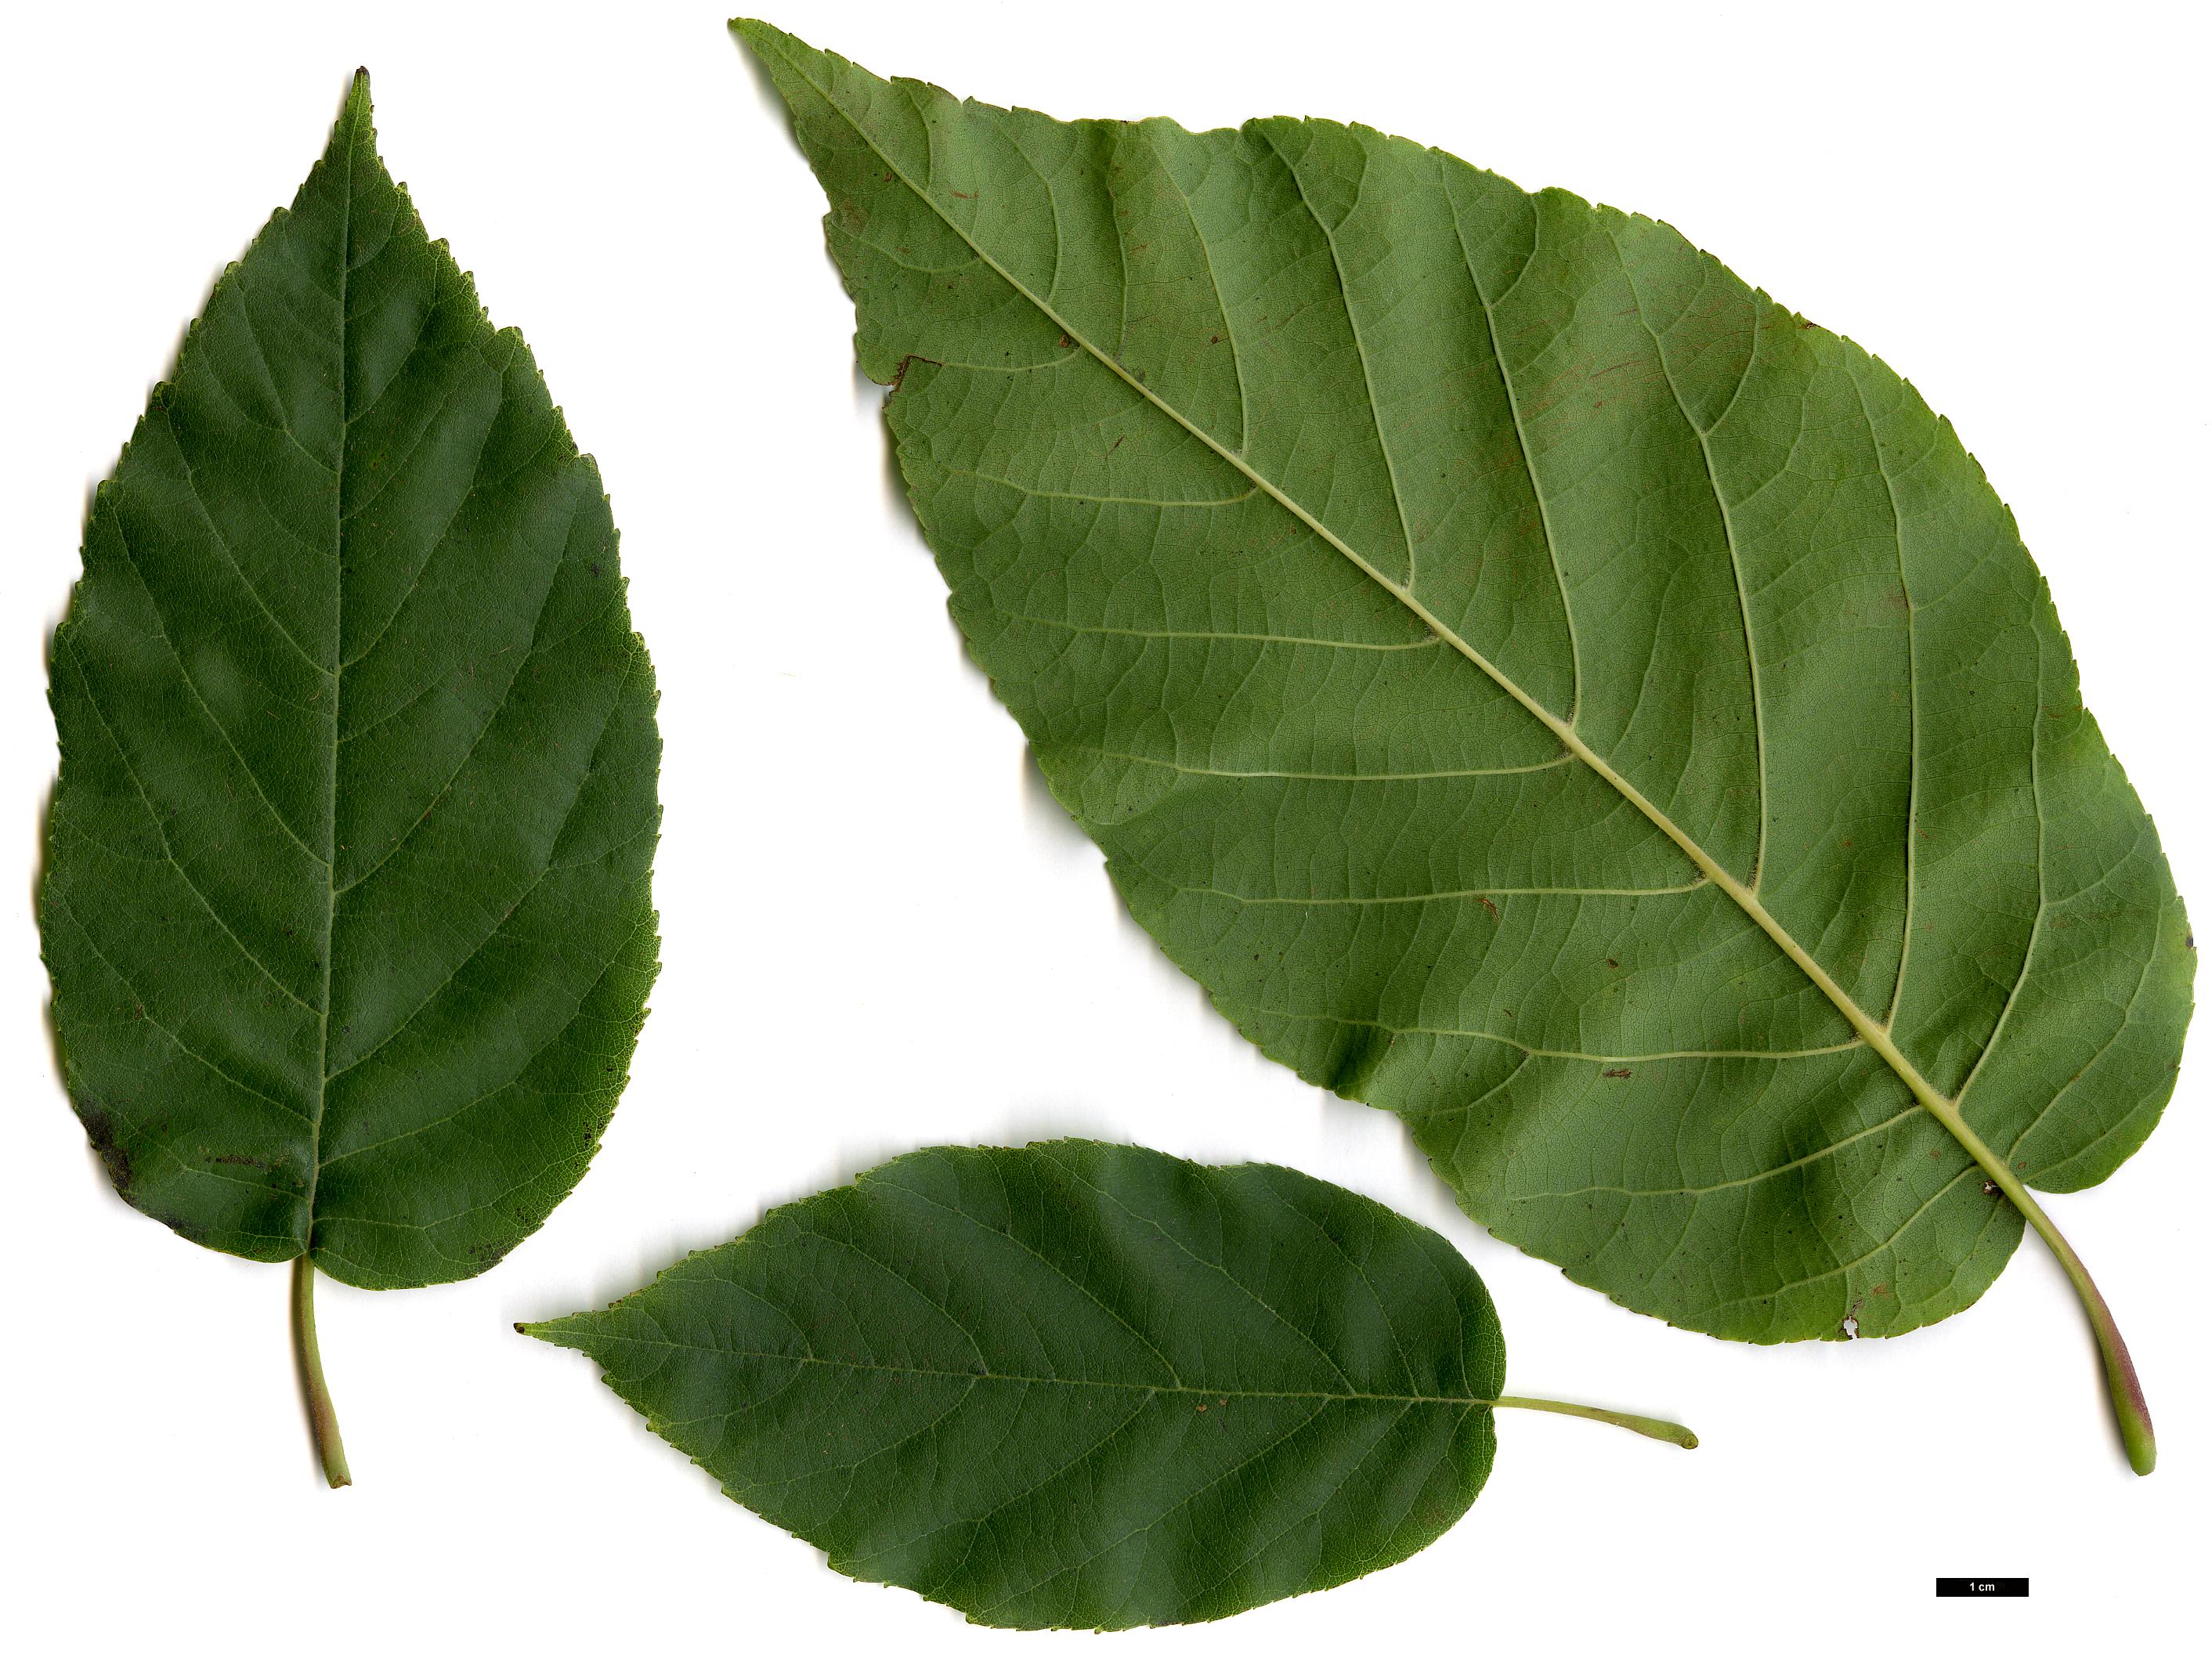 High resolution image: Family: Betulaceae - Genus: Alnus - Taxon: subcordata